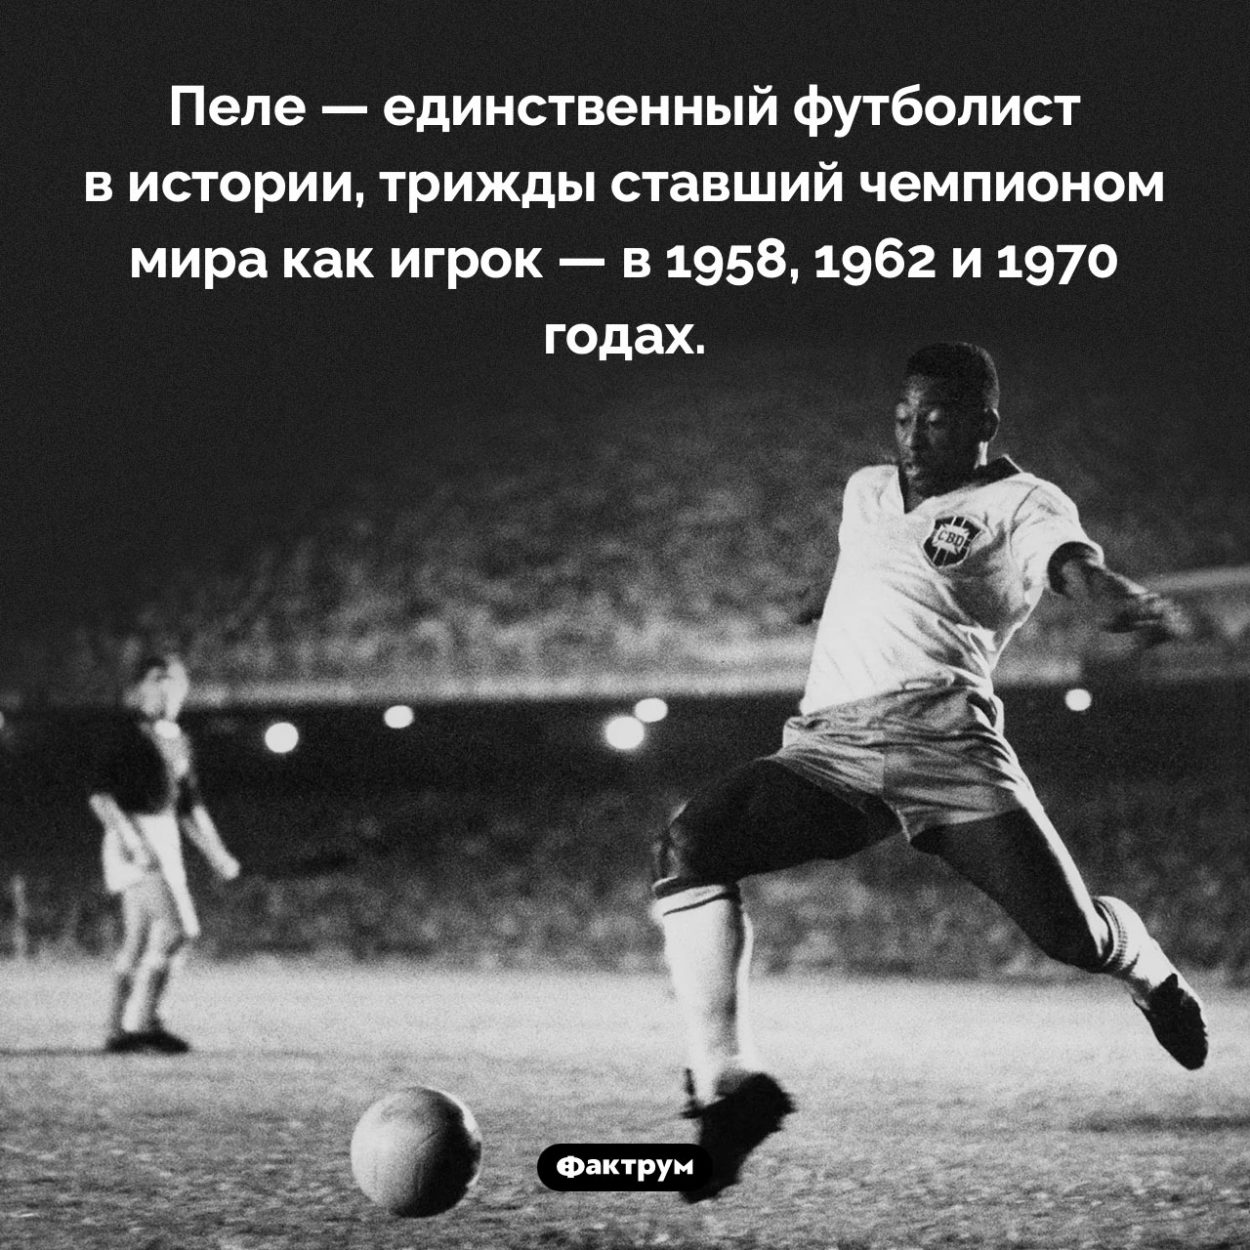 Удивительный рекорд Пеле. Пеле — единственный футболист в истории, трижды ставший чемпионом мира как игрок — в 1958, 1962 и 1970 годах.